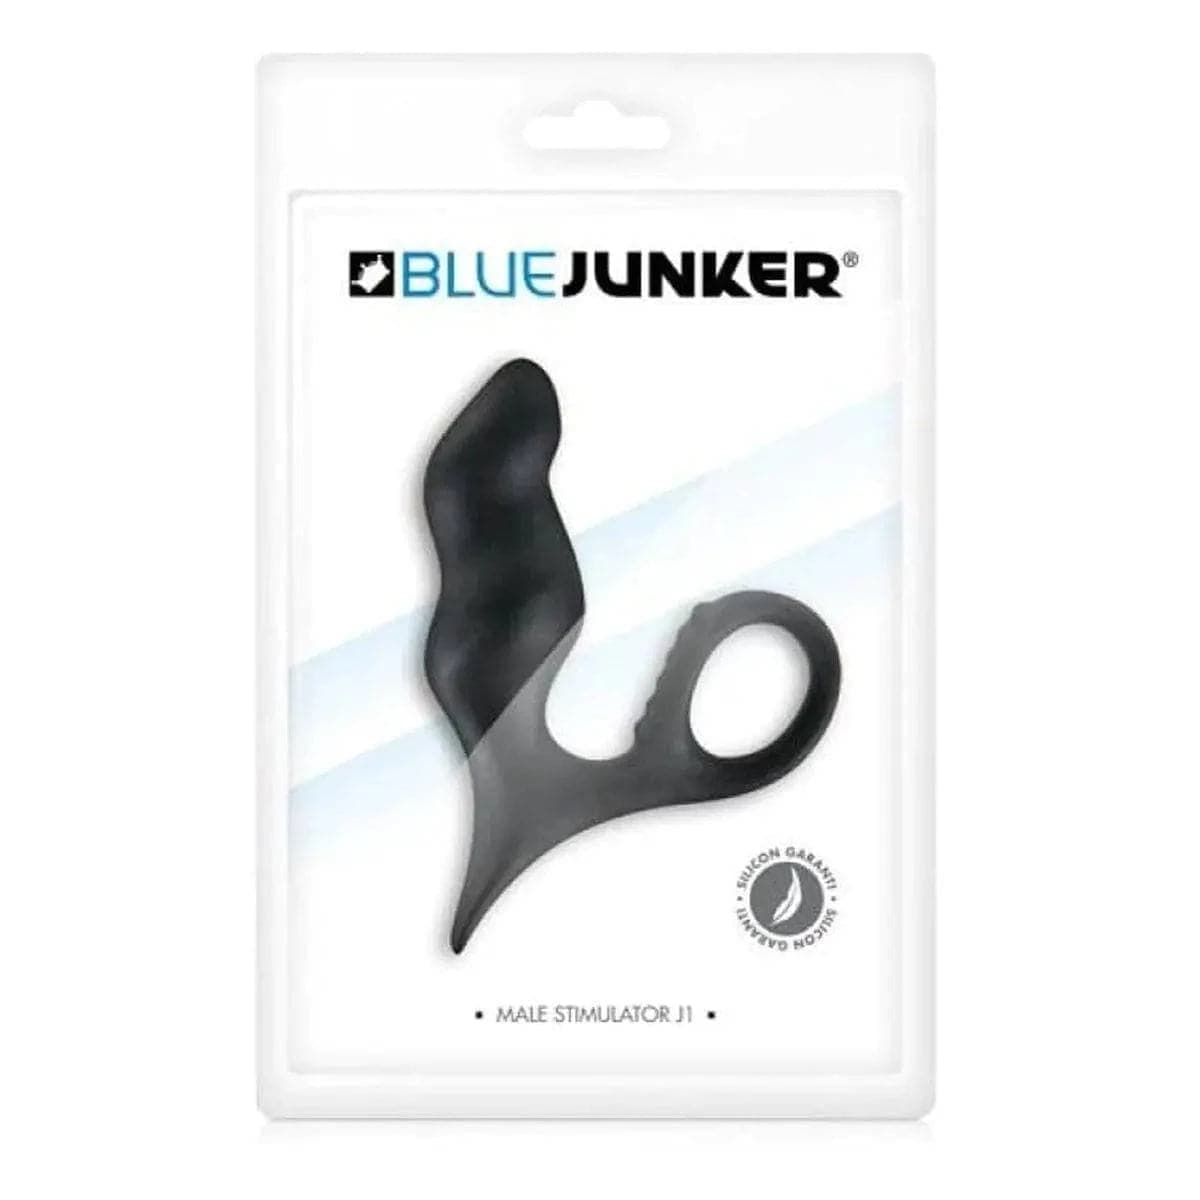 Estimulador Próstata J1 BLUE JUNKER Preto, 12cm Ø3cm, 100% Silicone  Blue Junker   